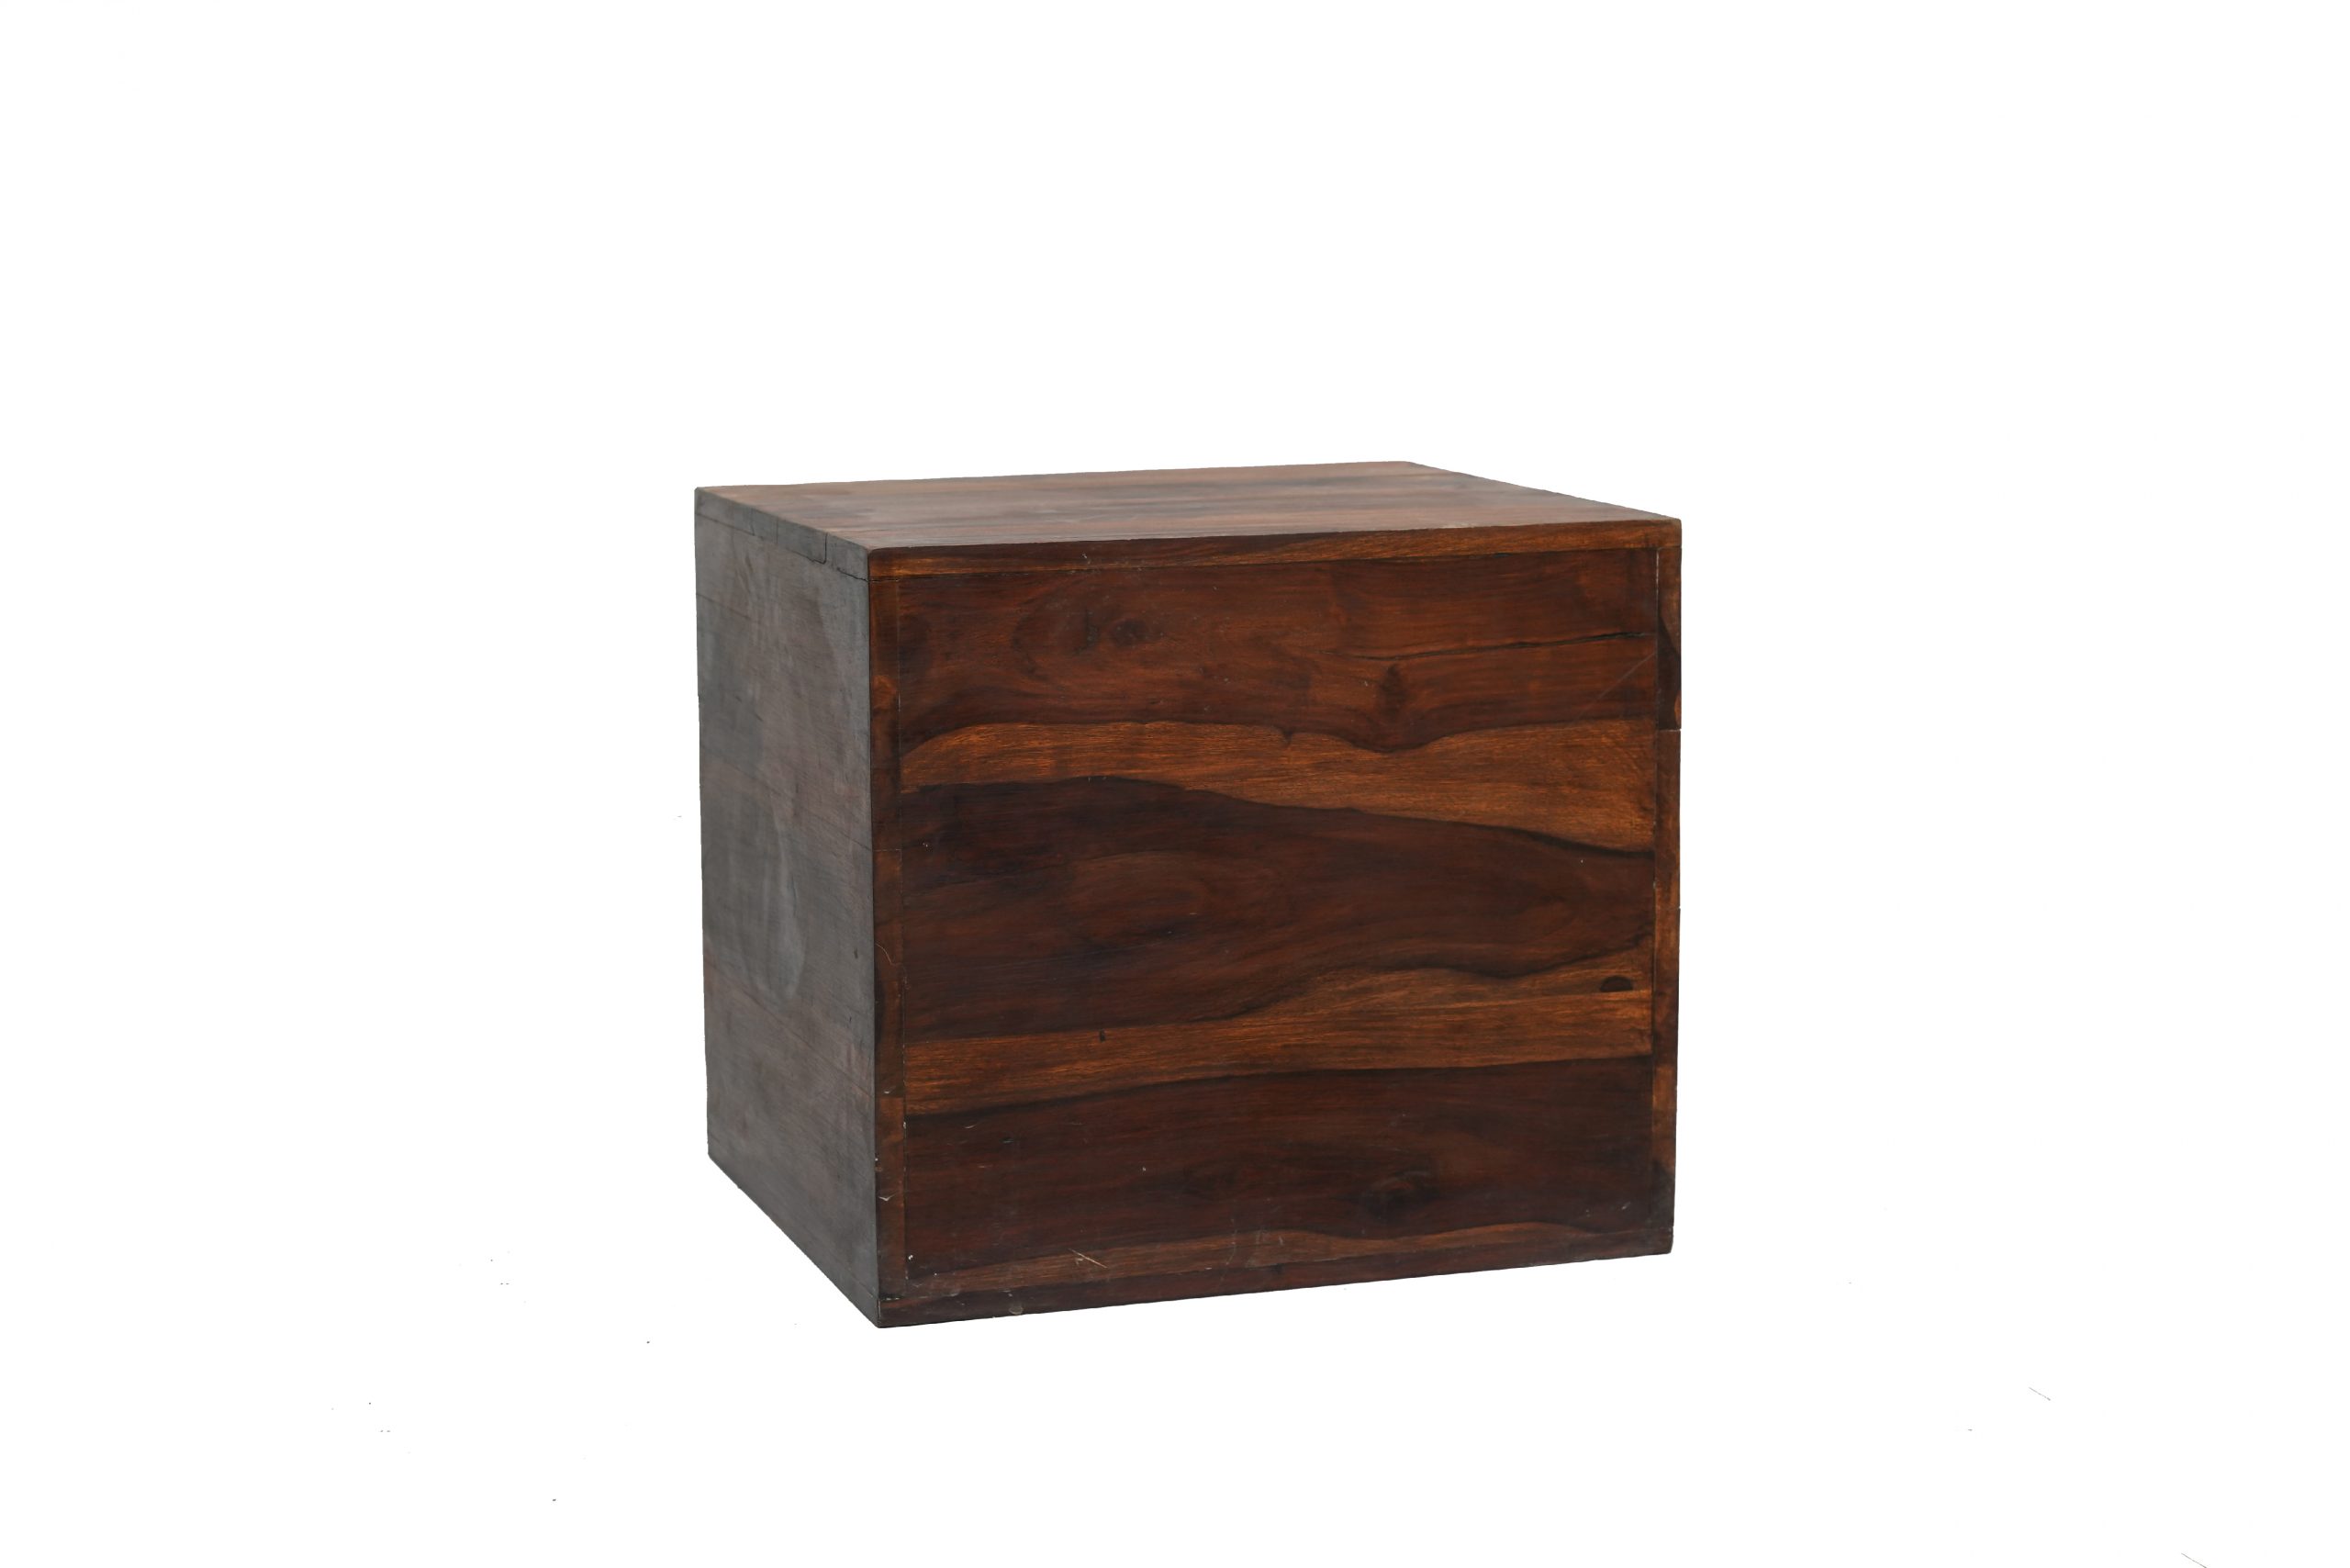 Wooden square box